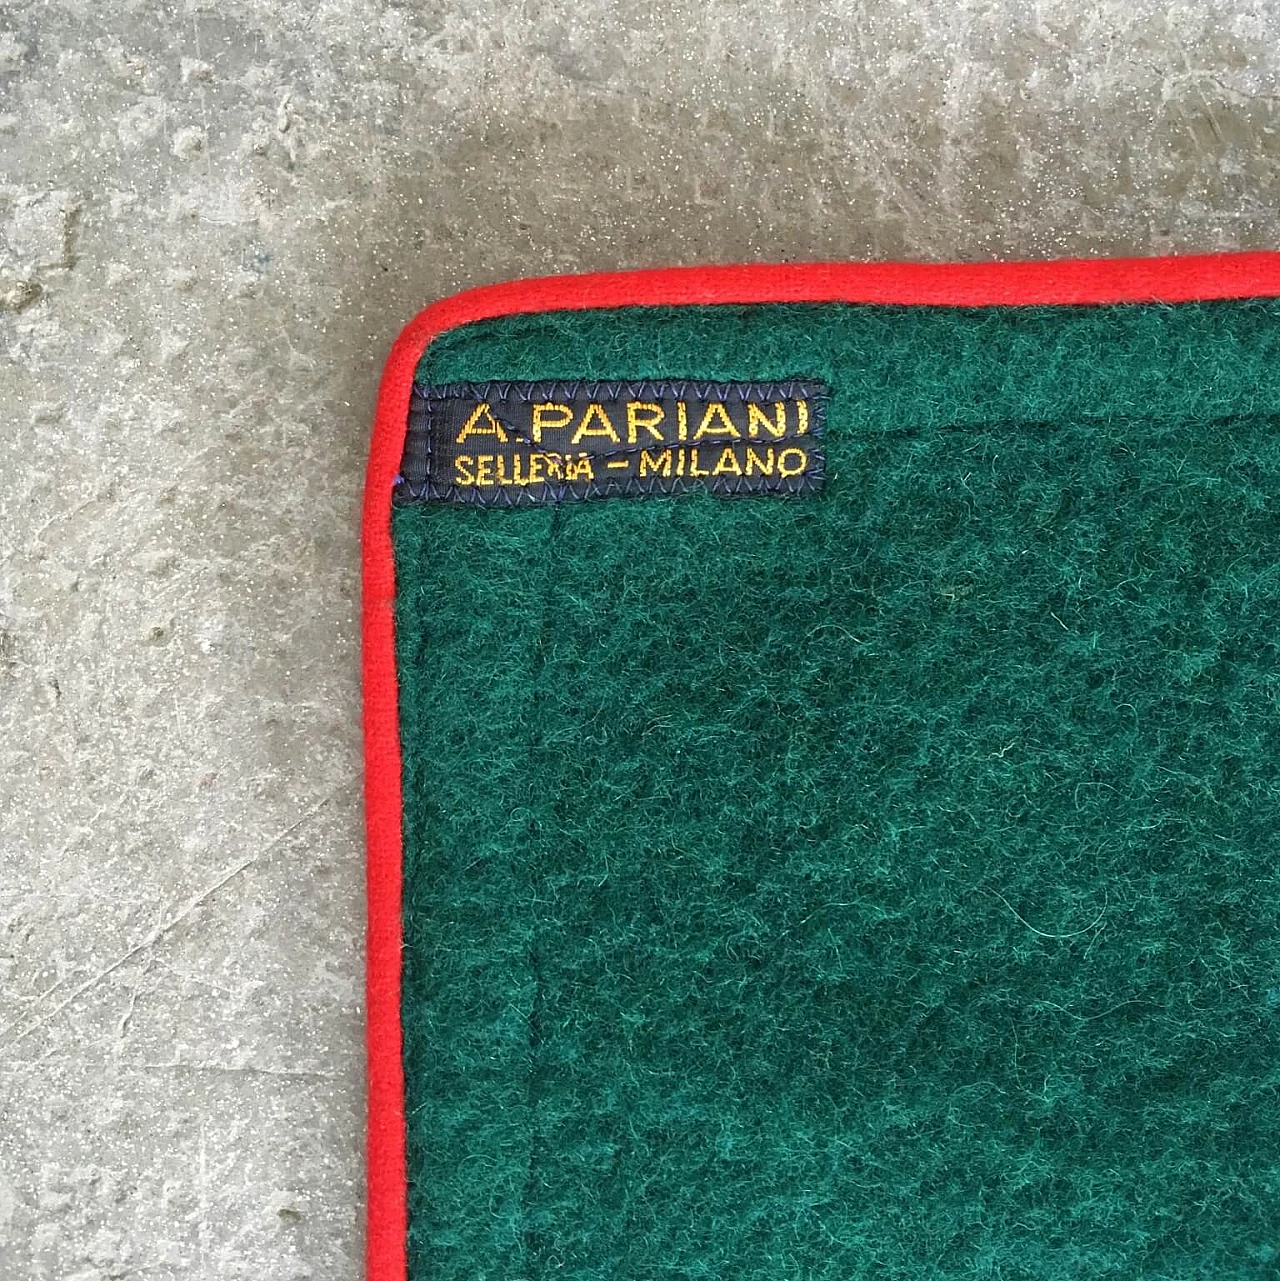 Coperta verde Selleria Pariani, realizzata a mano, pura lana vergine, profili rossi e cuoio, 1980 1071702